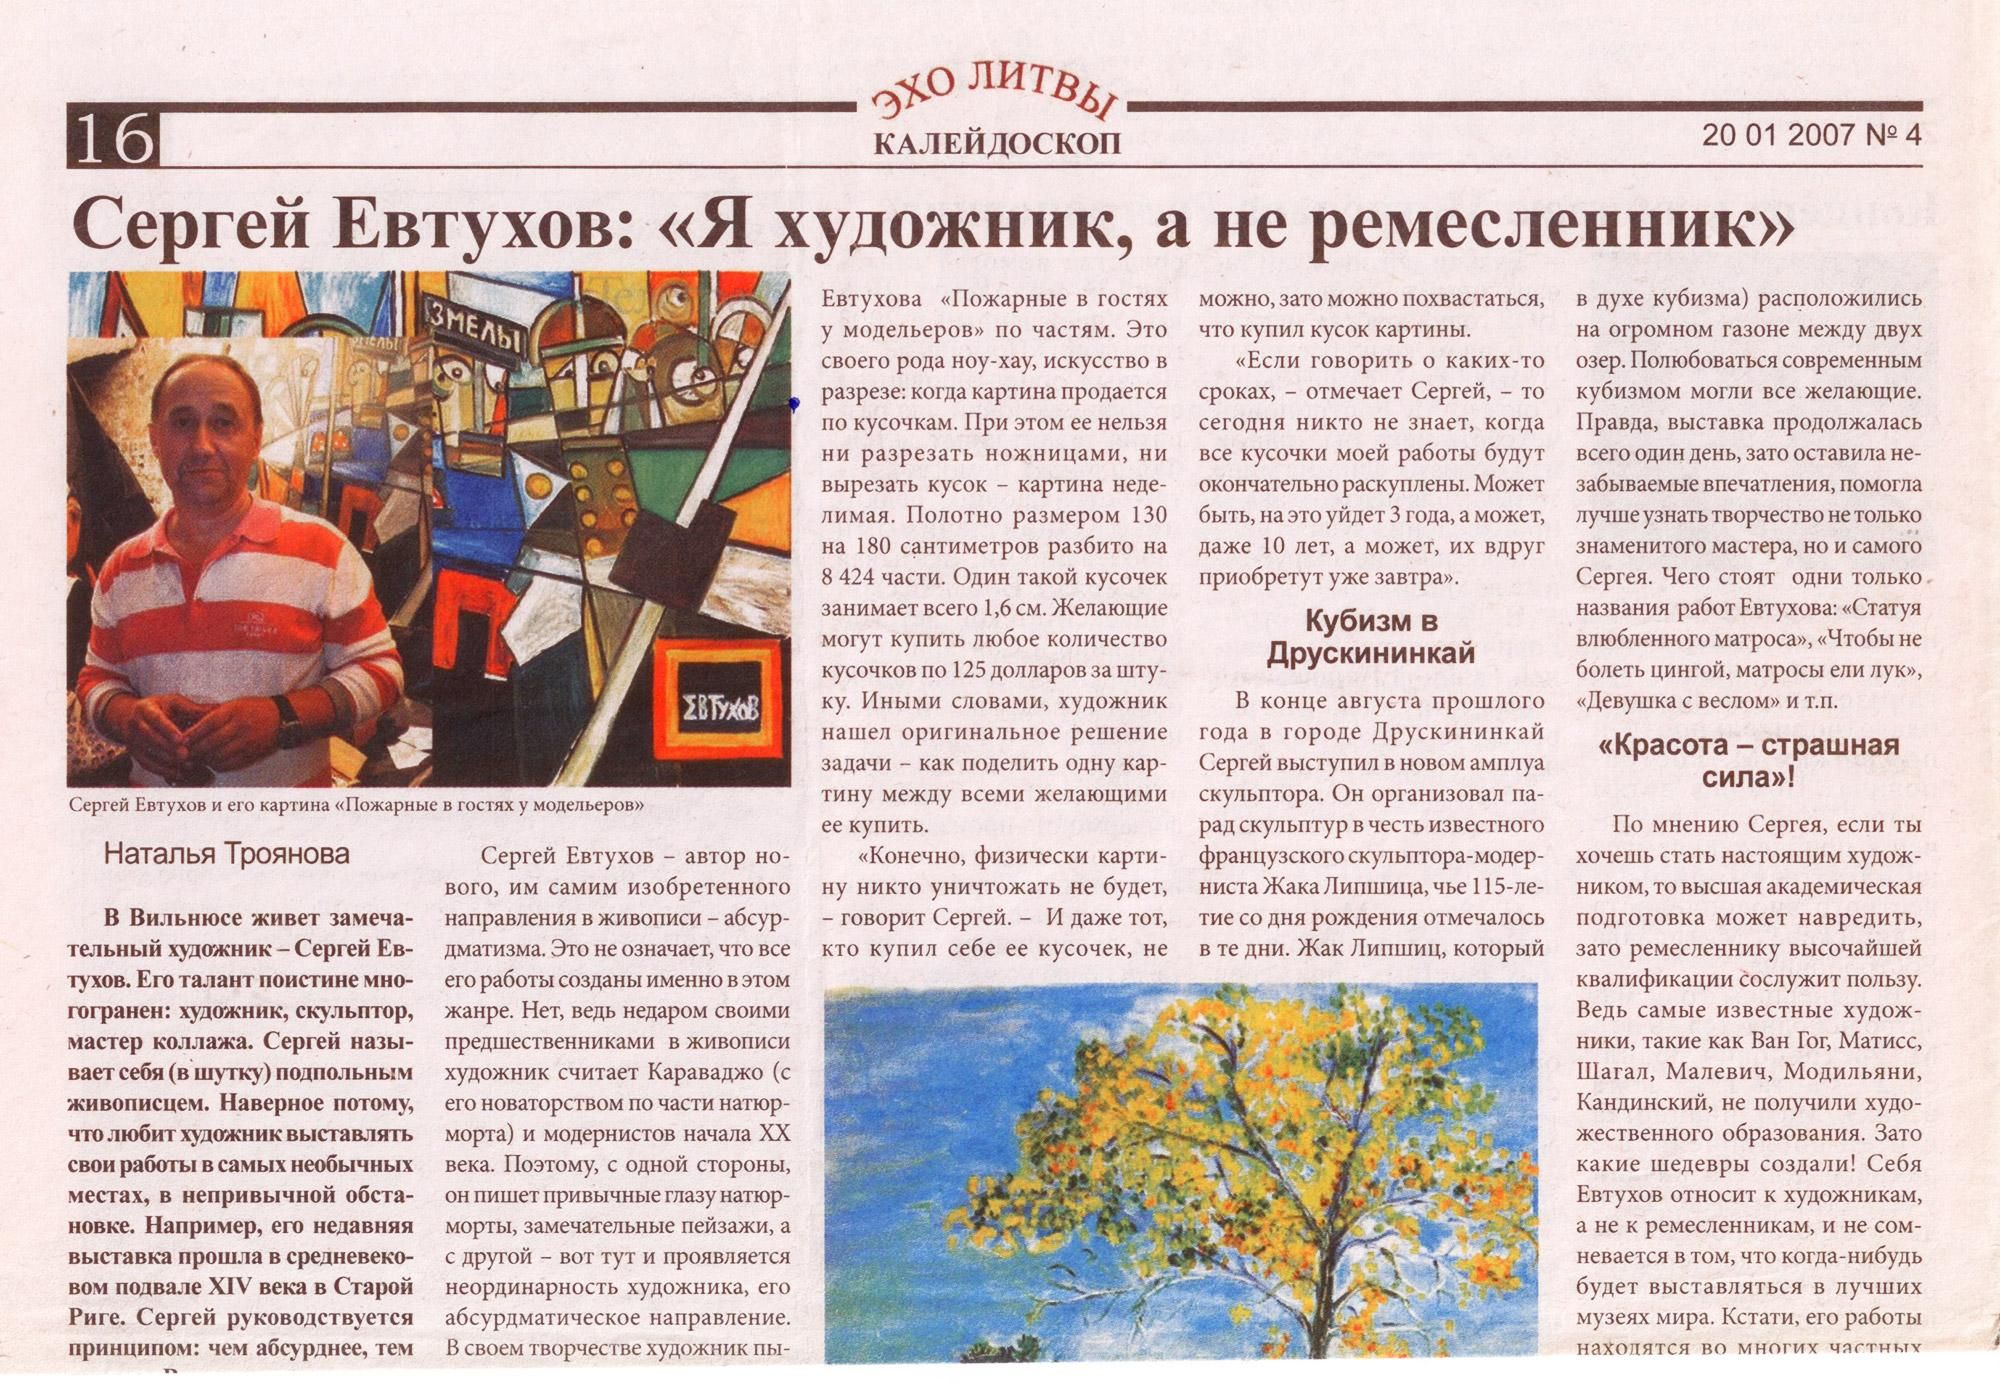 Статья в литовской газете <b>"Литовский курьер"</b>(фрагмент)